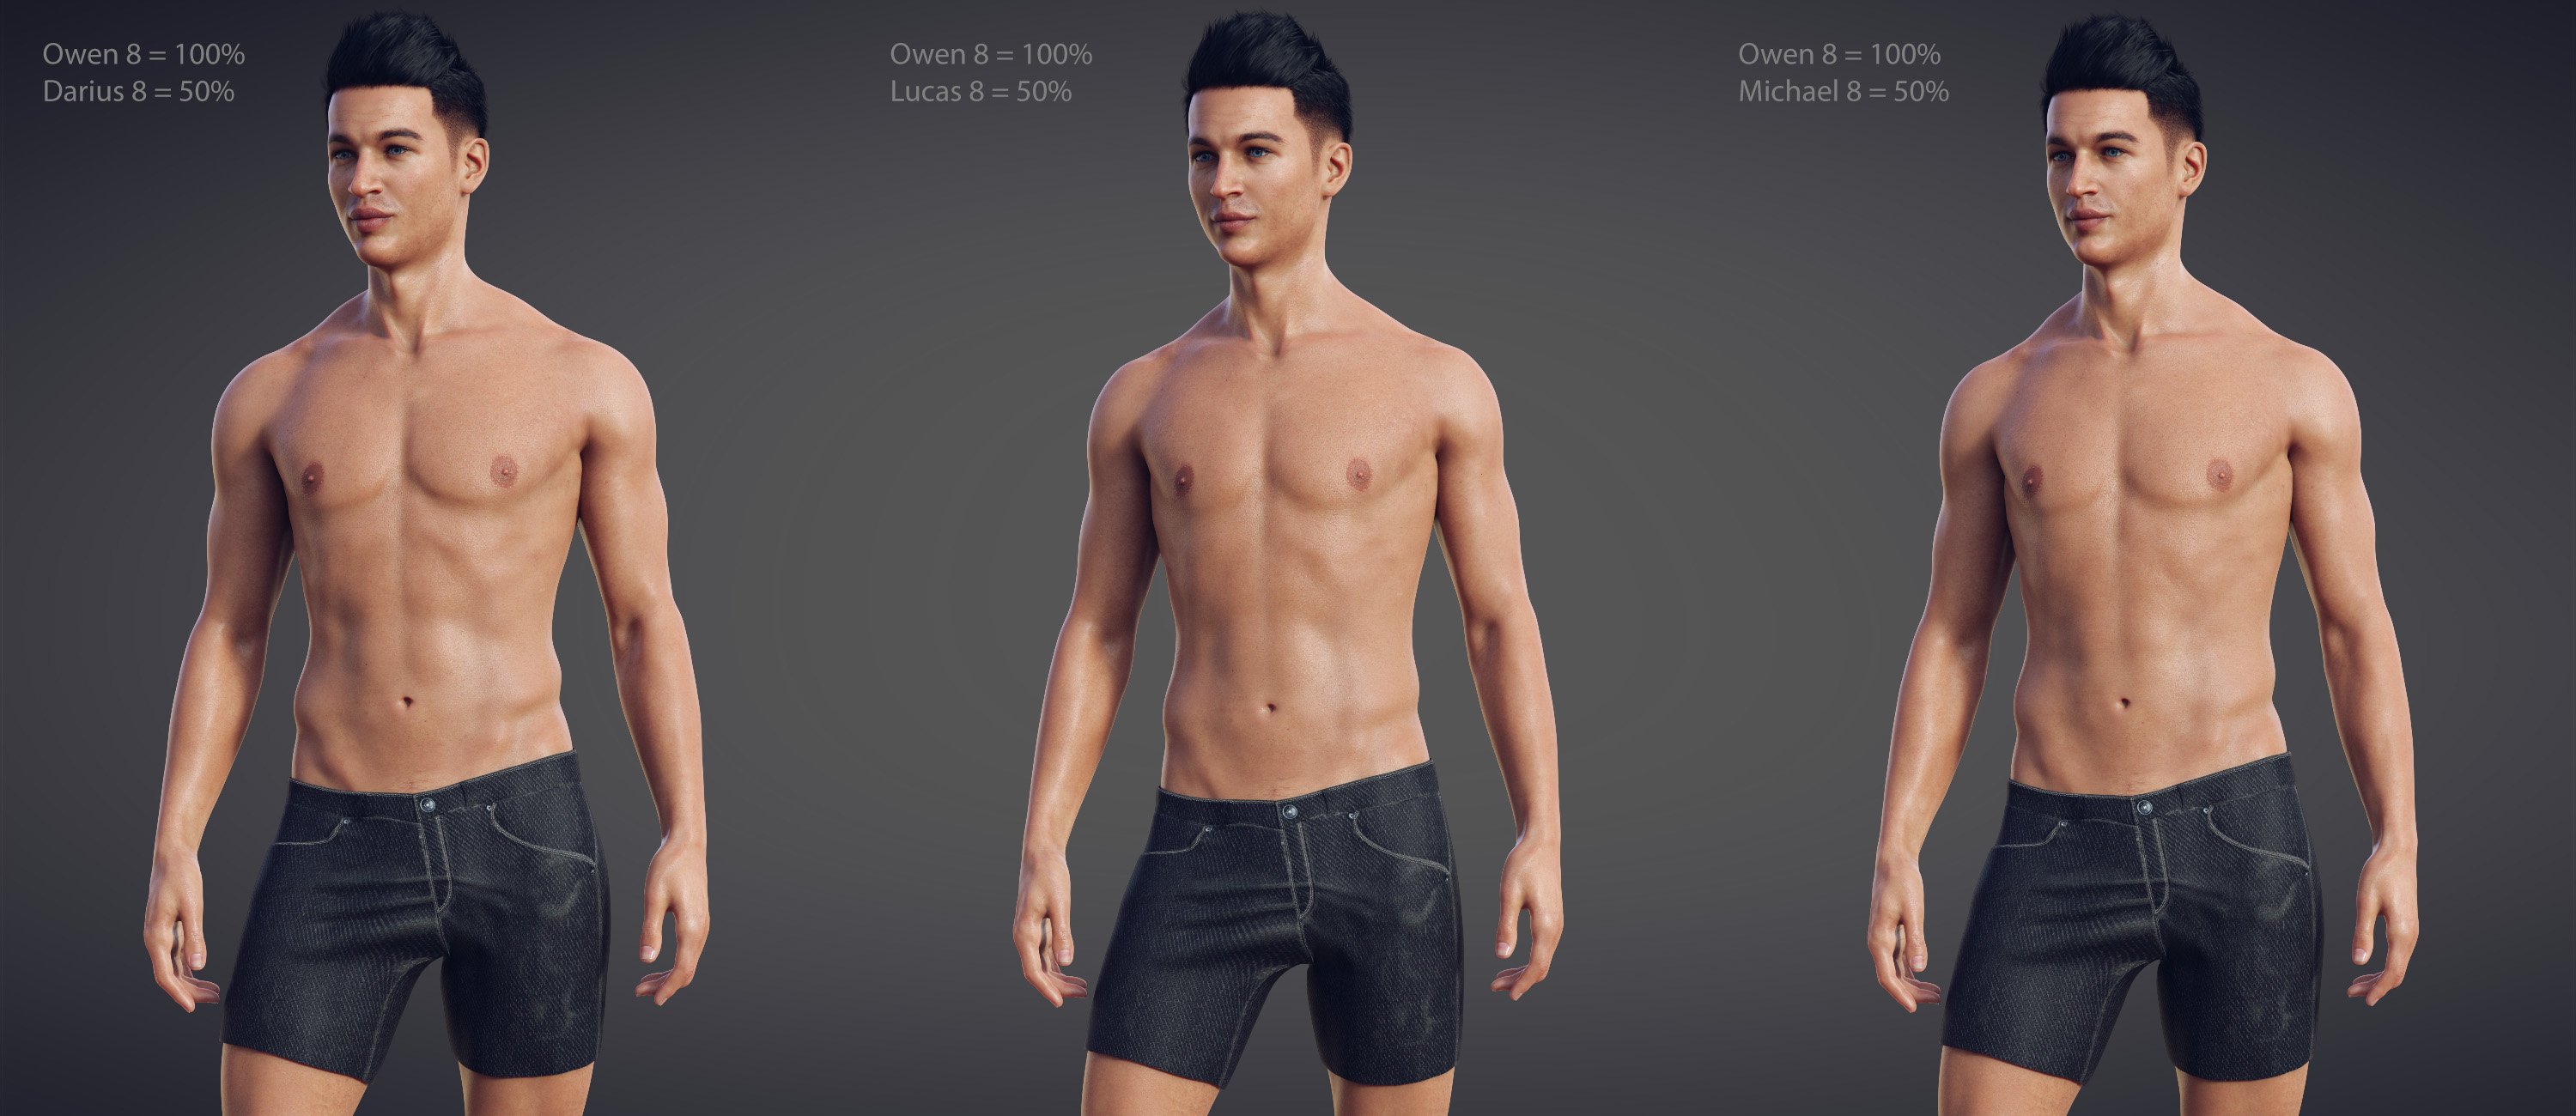 Owen 8 by: , 3D Models by Daz 3D